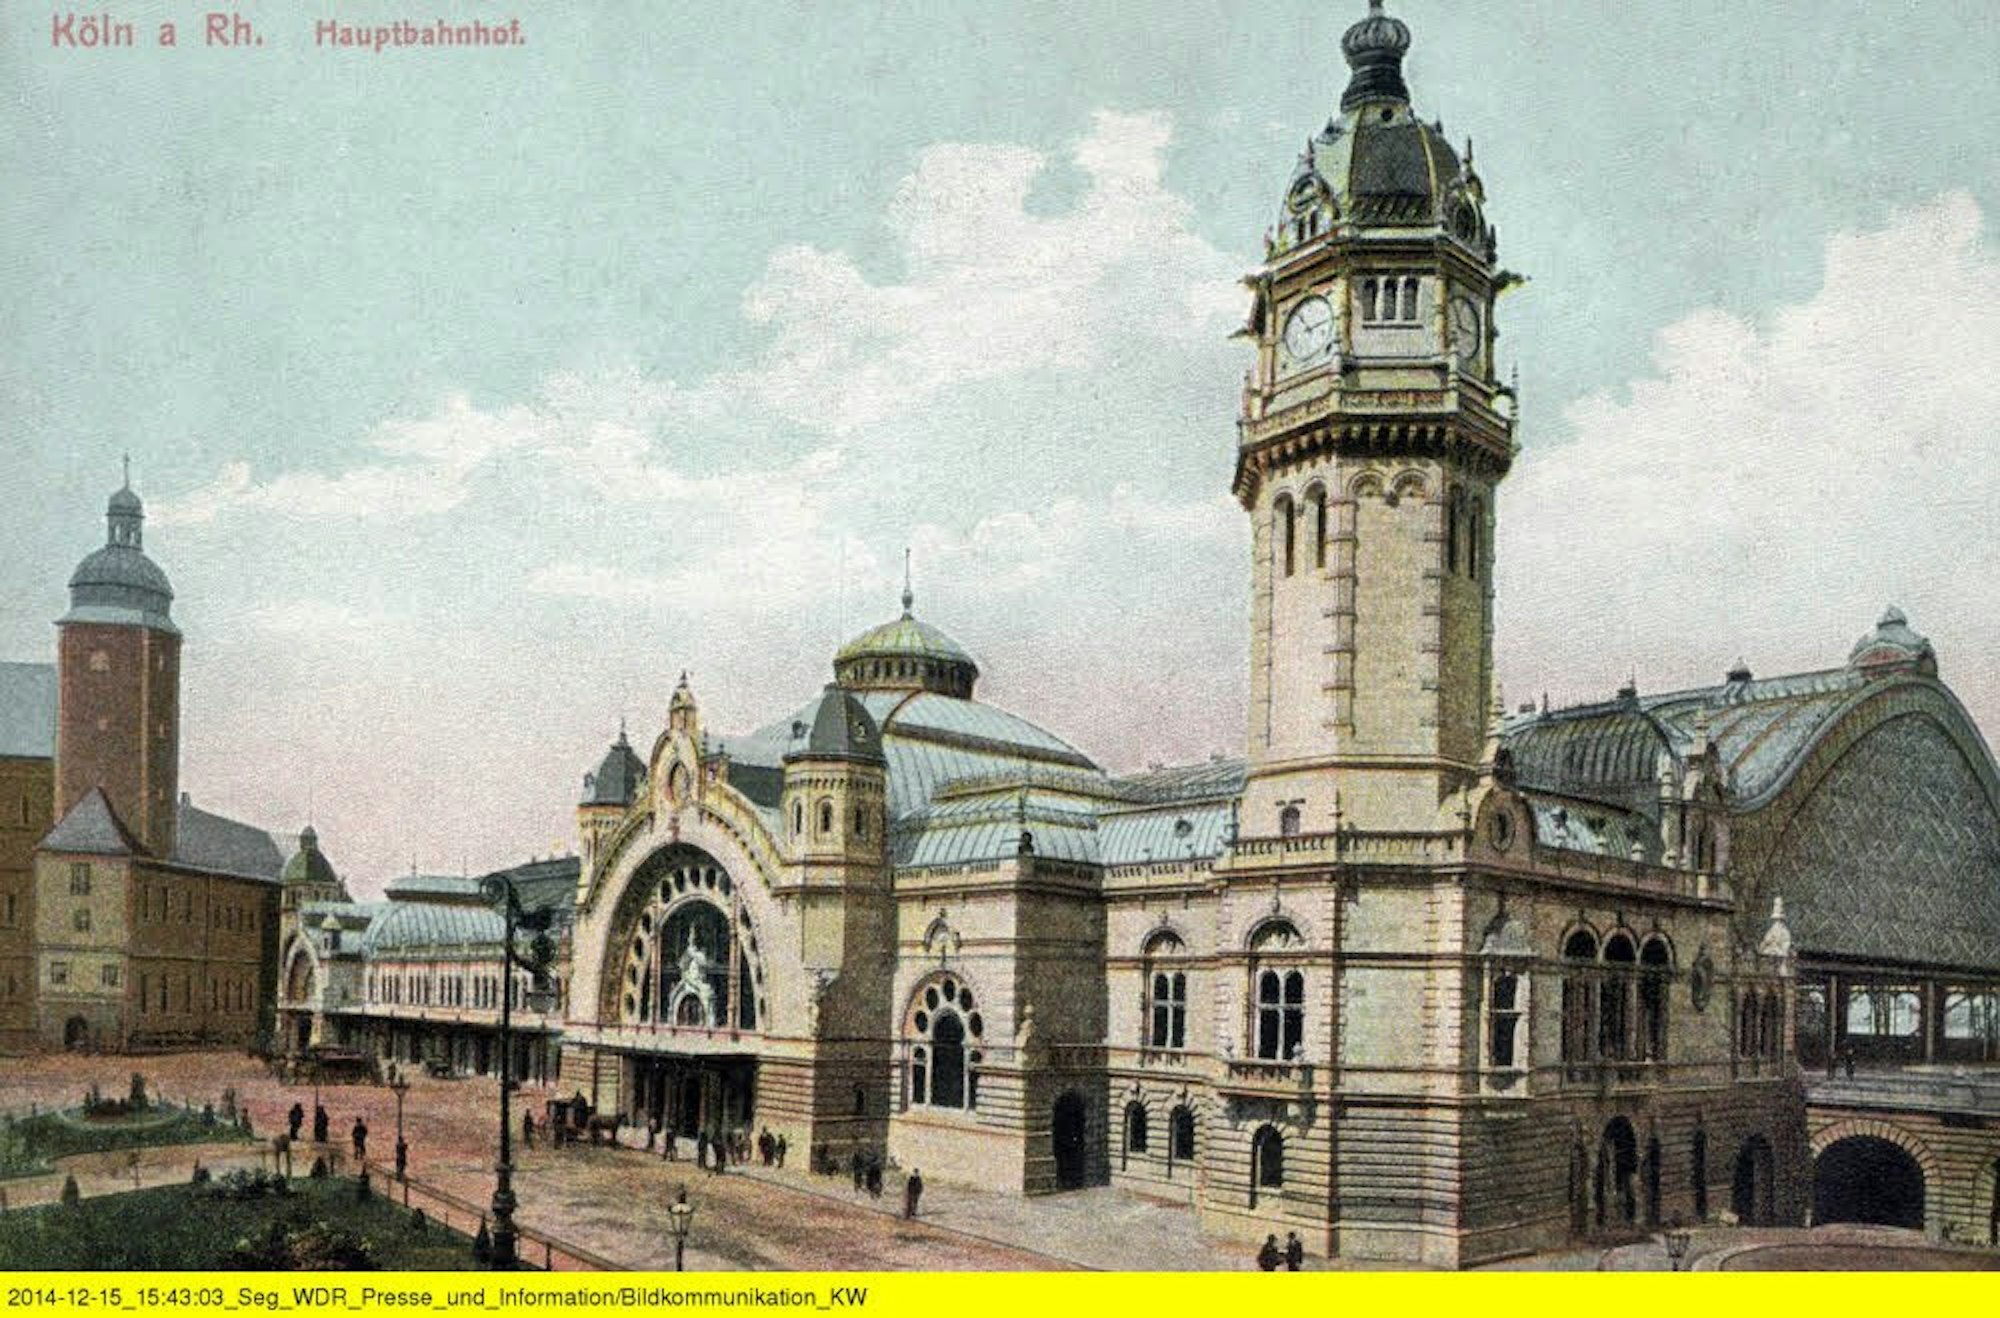 Die Eingangshalle wurde nach dem Zweiten Weltkrieg abgerissen.